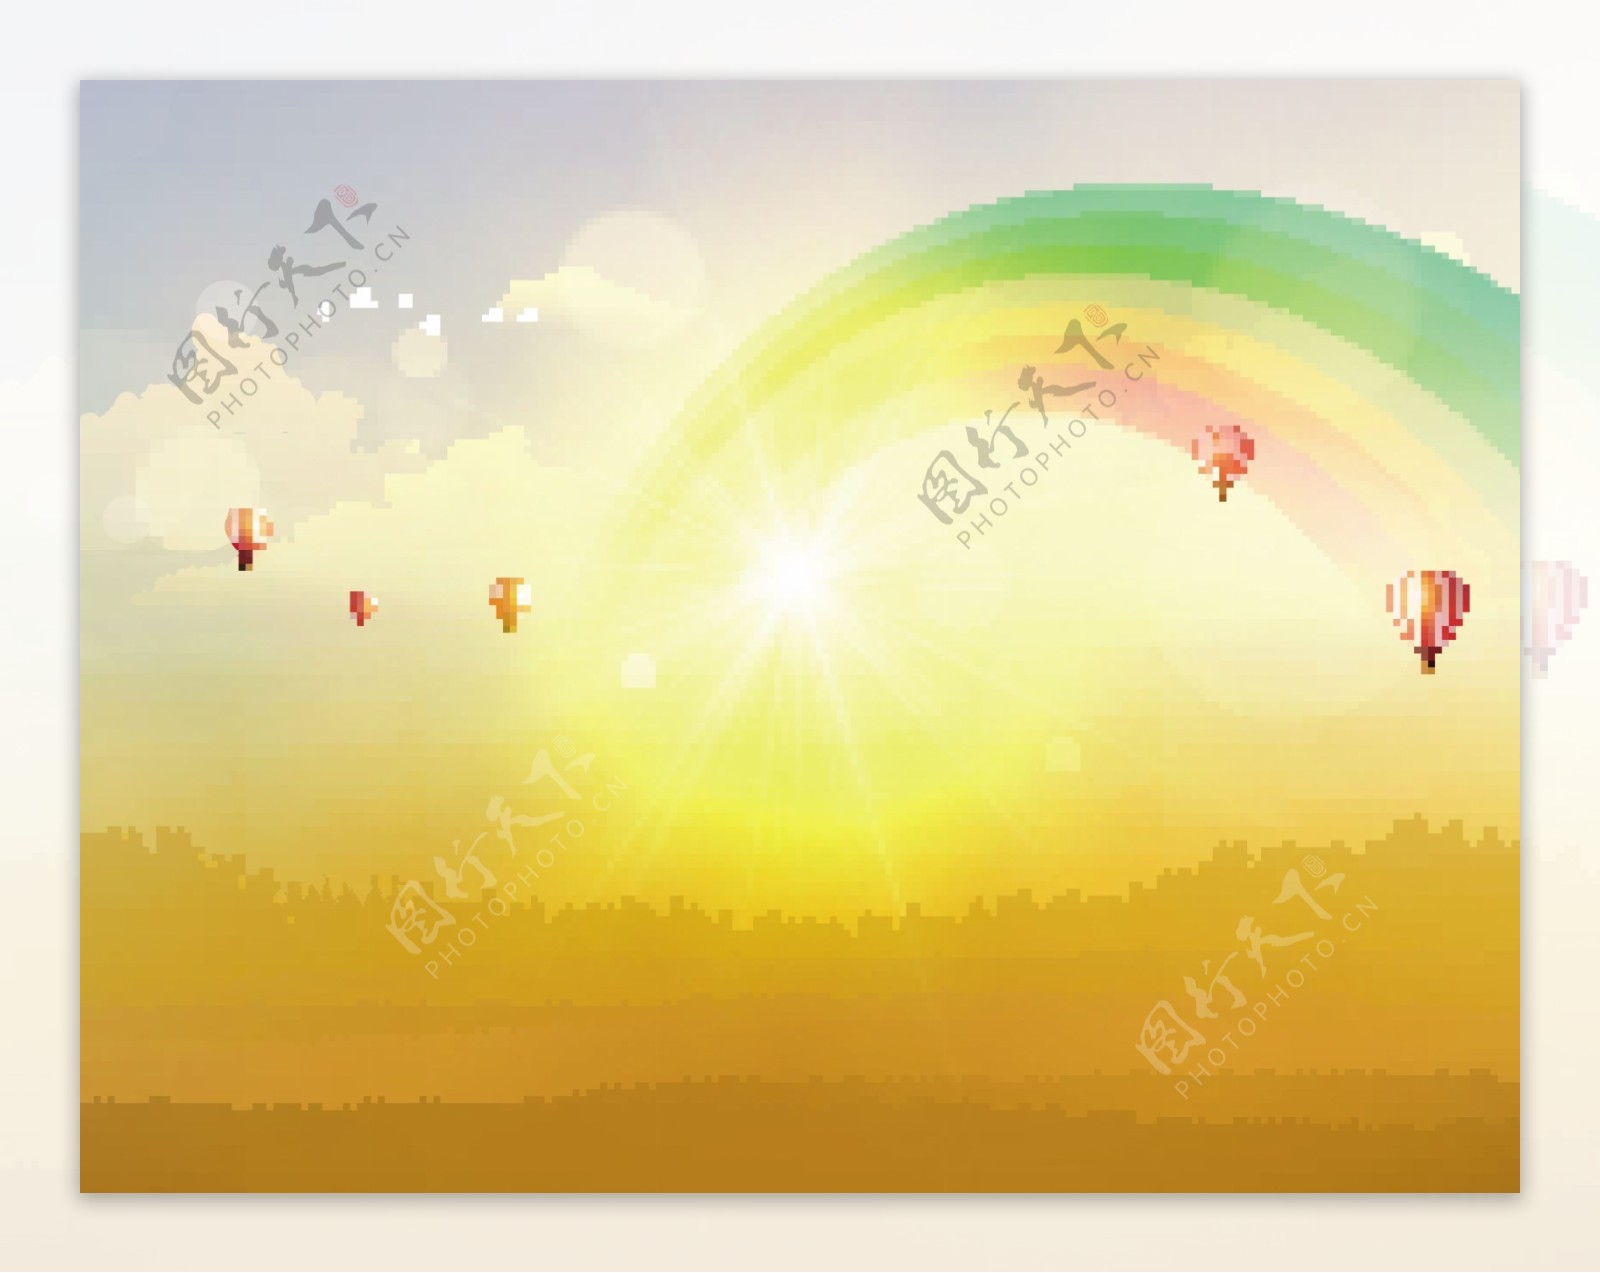 气球彩虹图片